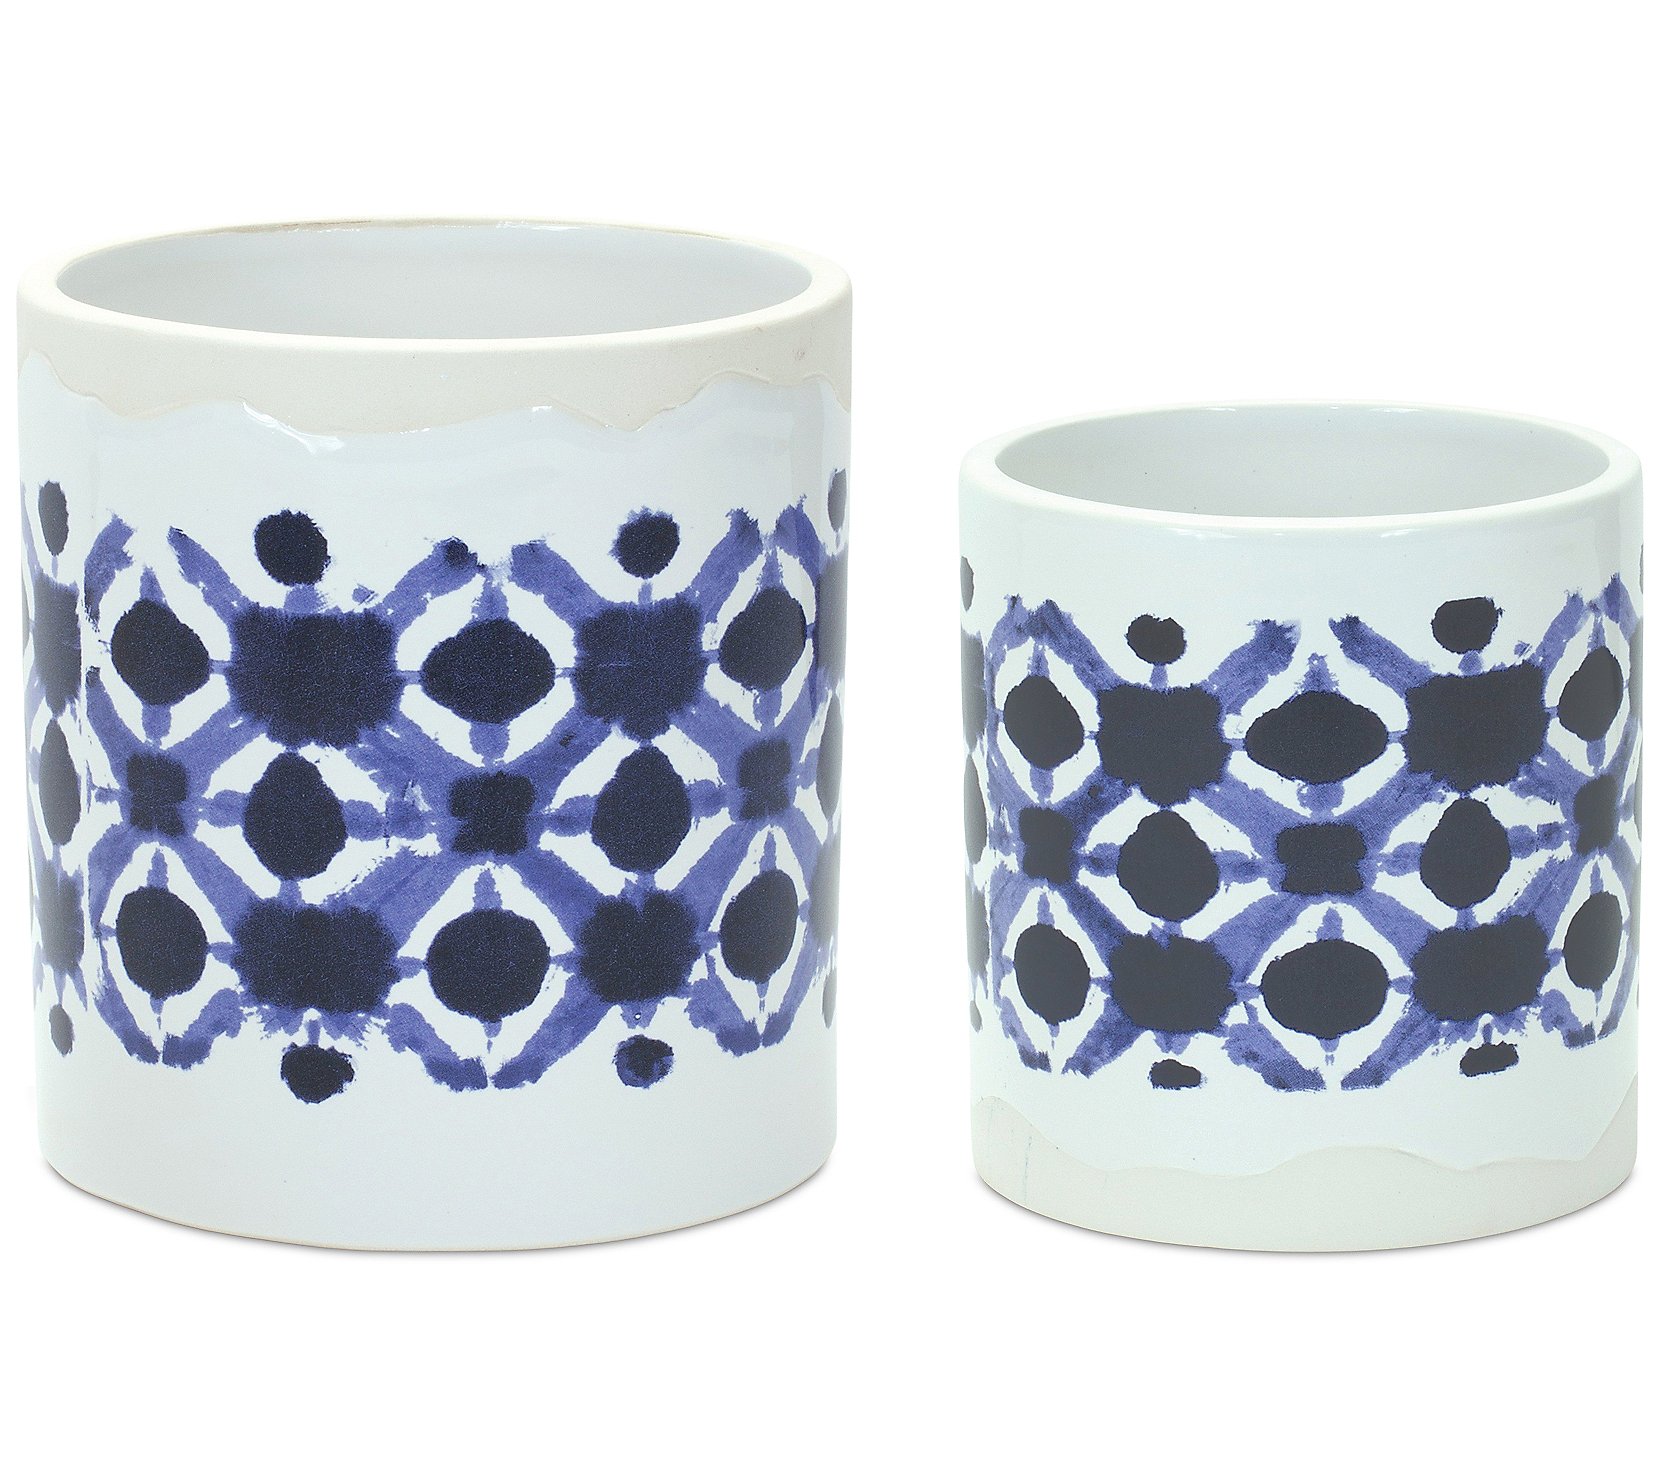 Melrose Tie-Dye Ceramic Pot (Set of 2)